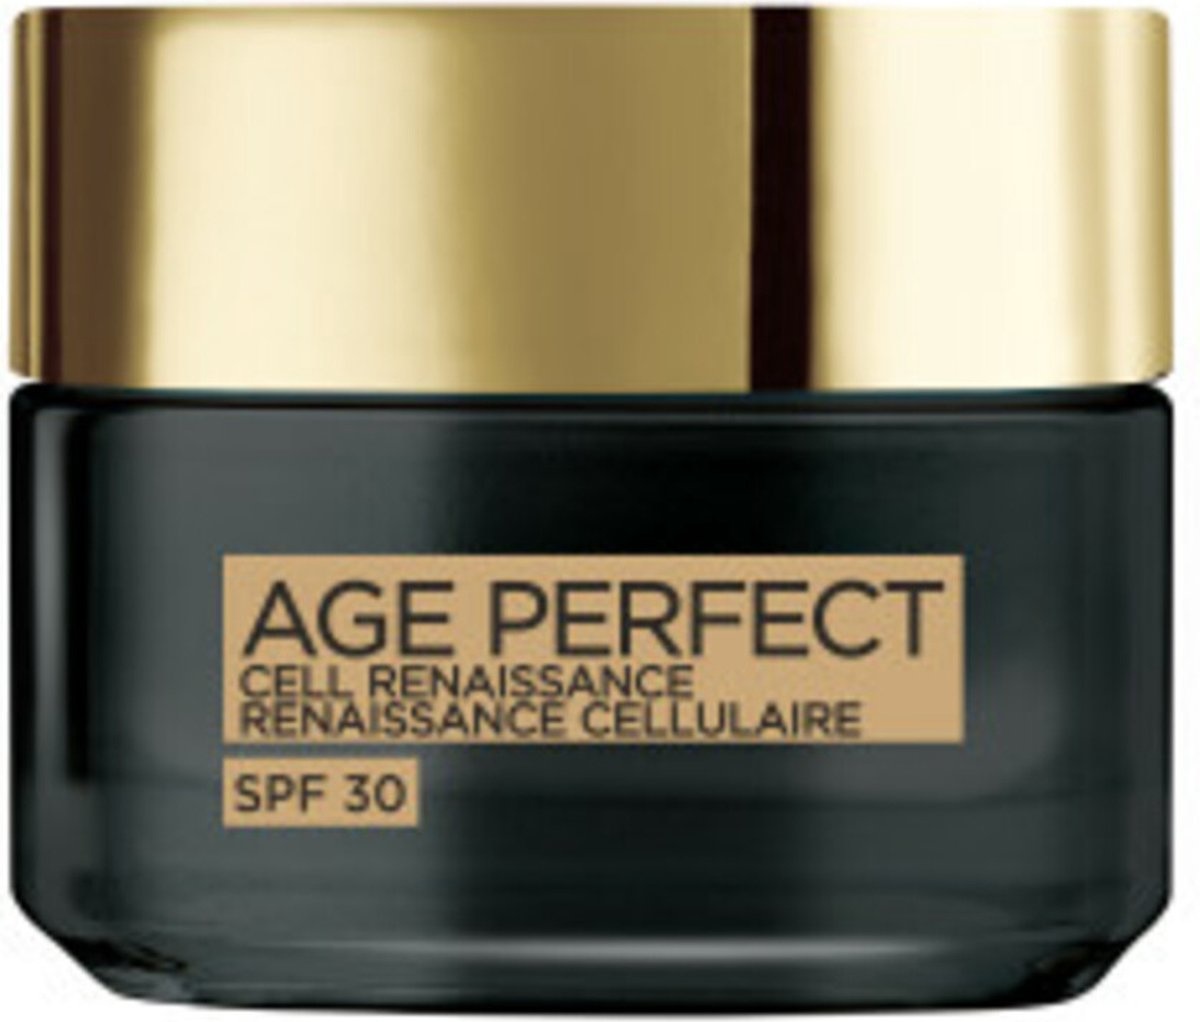 L'Oréal Paris Age Perfect Cell Renaissance SPF 30 Crème de Jour - 50 ml